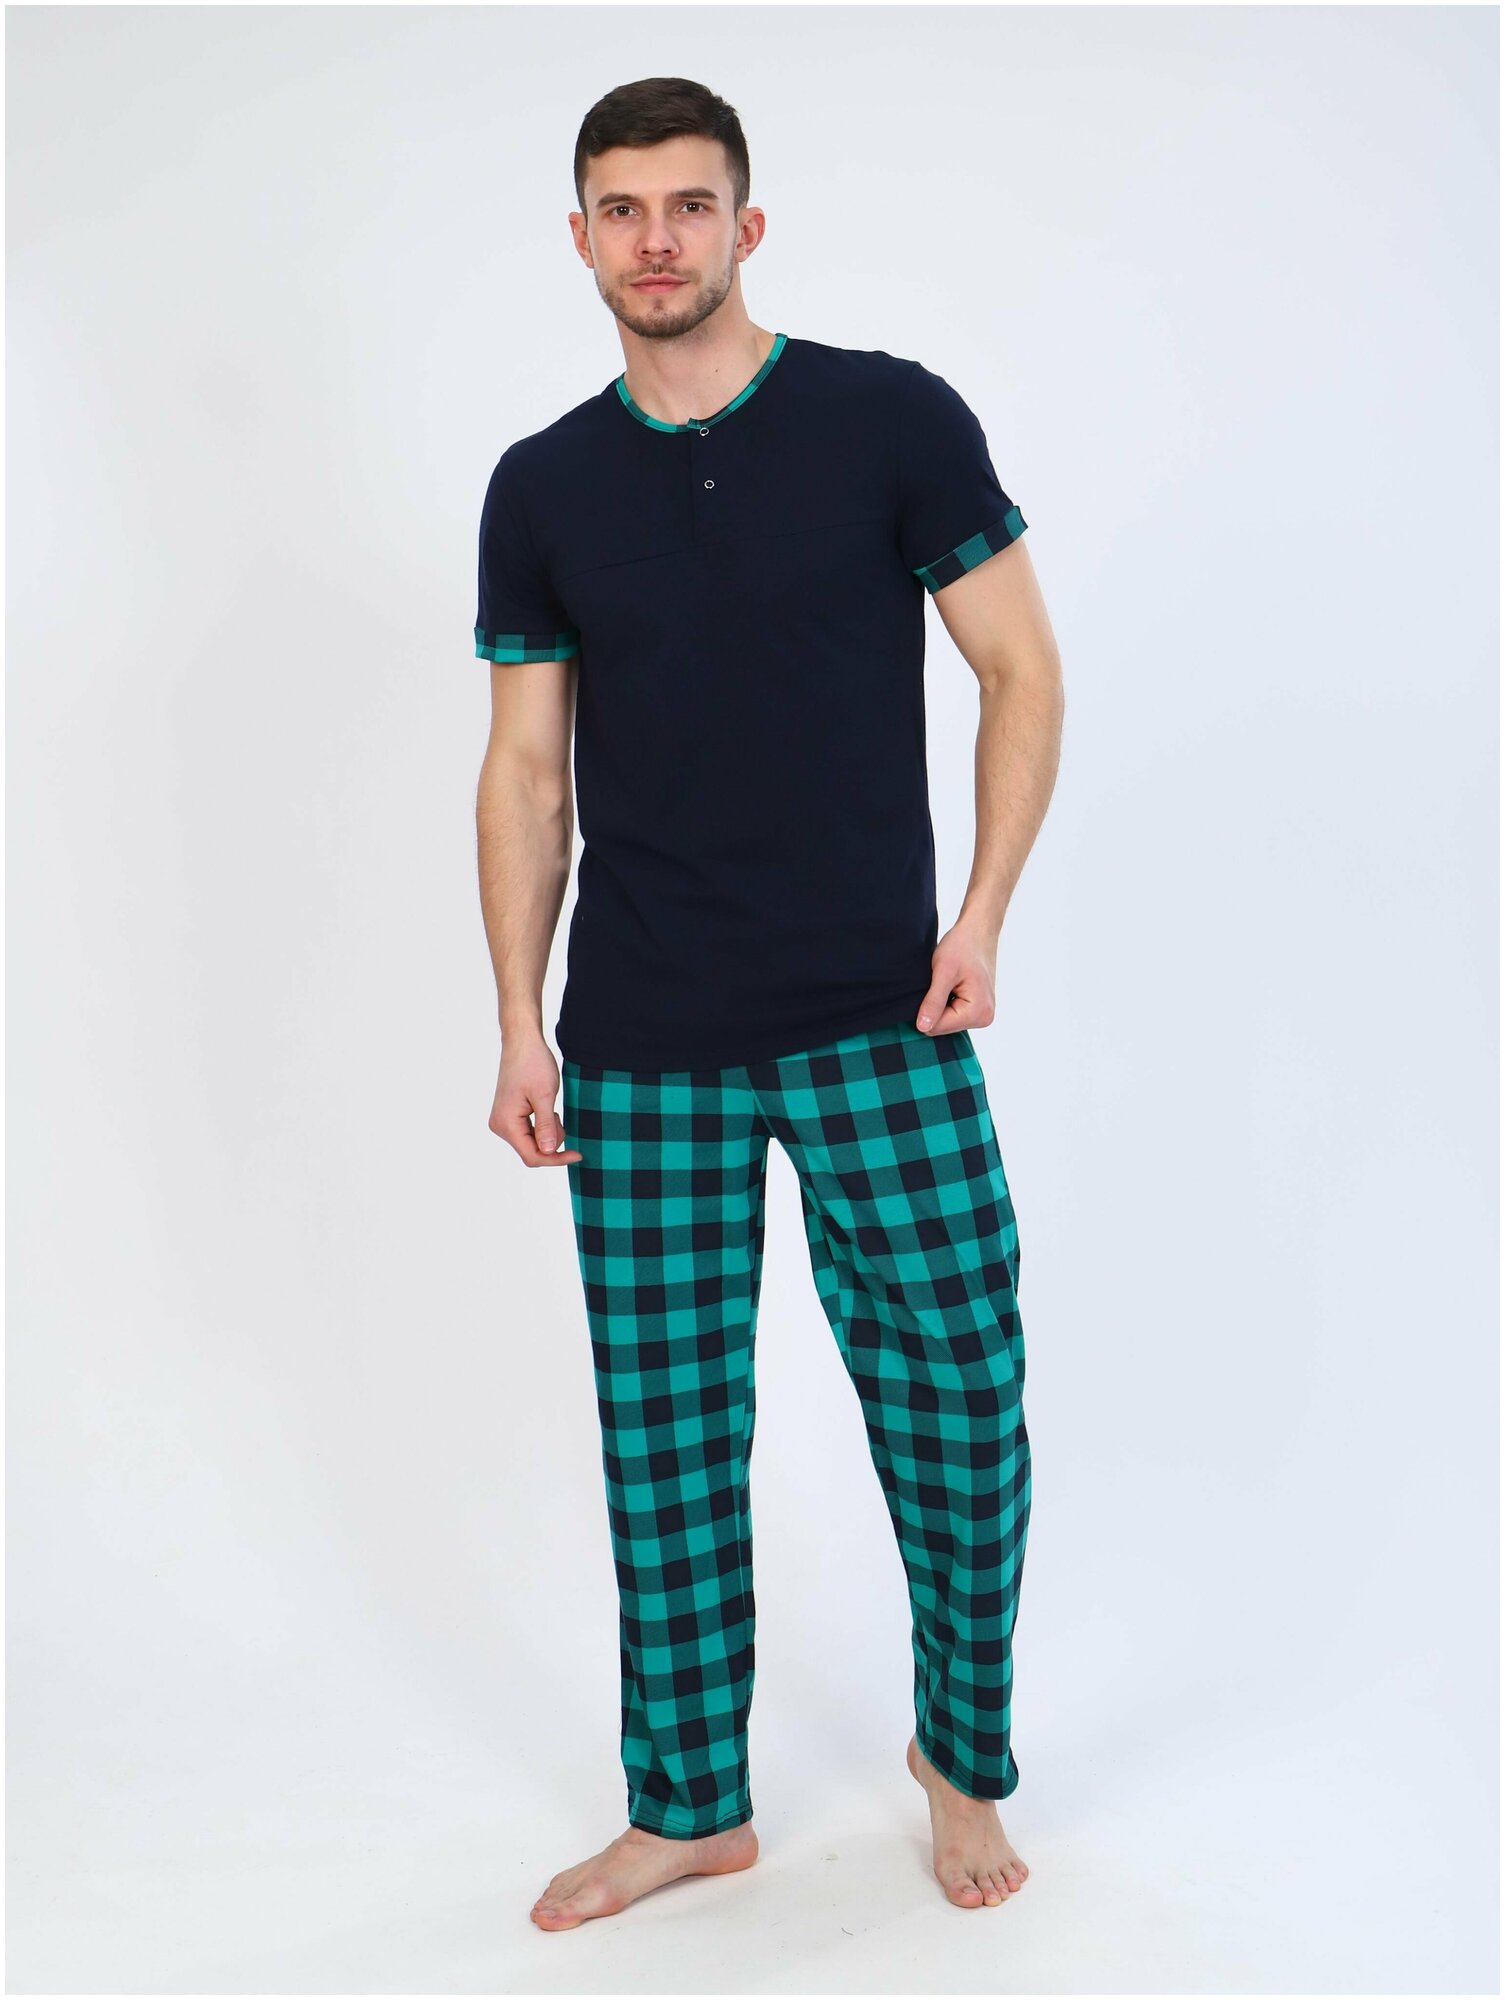 Домашний костюм мужской для дома Современная пижама мужская Комплект одежды повседневный, футболка и брюки зеленый